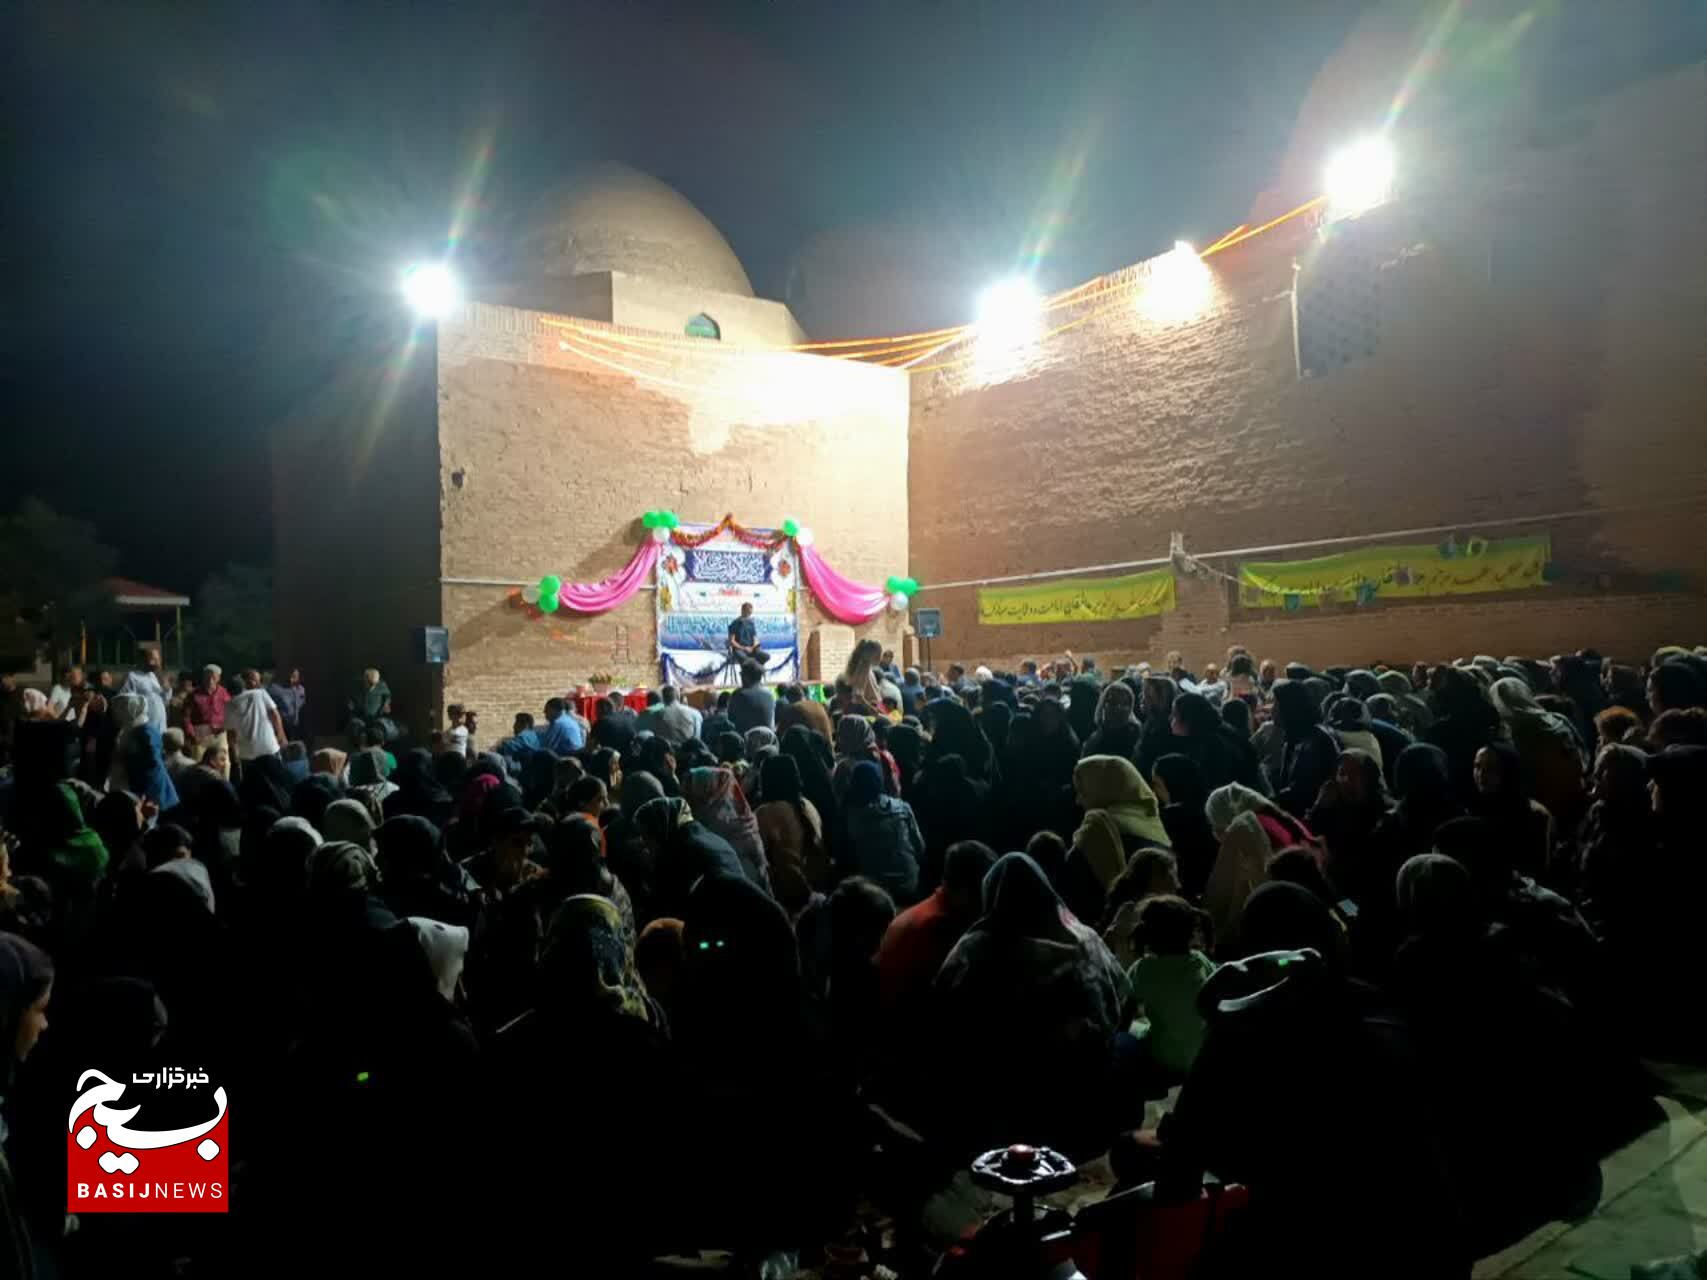 برگزاری جشن بزرگ عید غدیر در صحن امامزادگان زید ورحمان(ع) شهر پنگ آباد+تصاویر